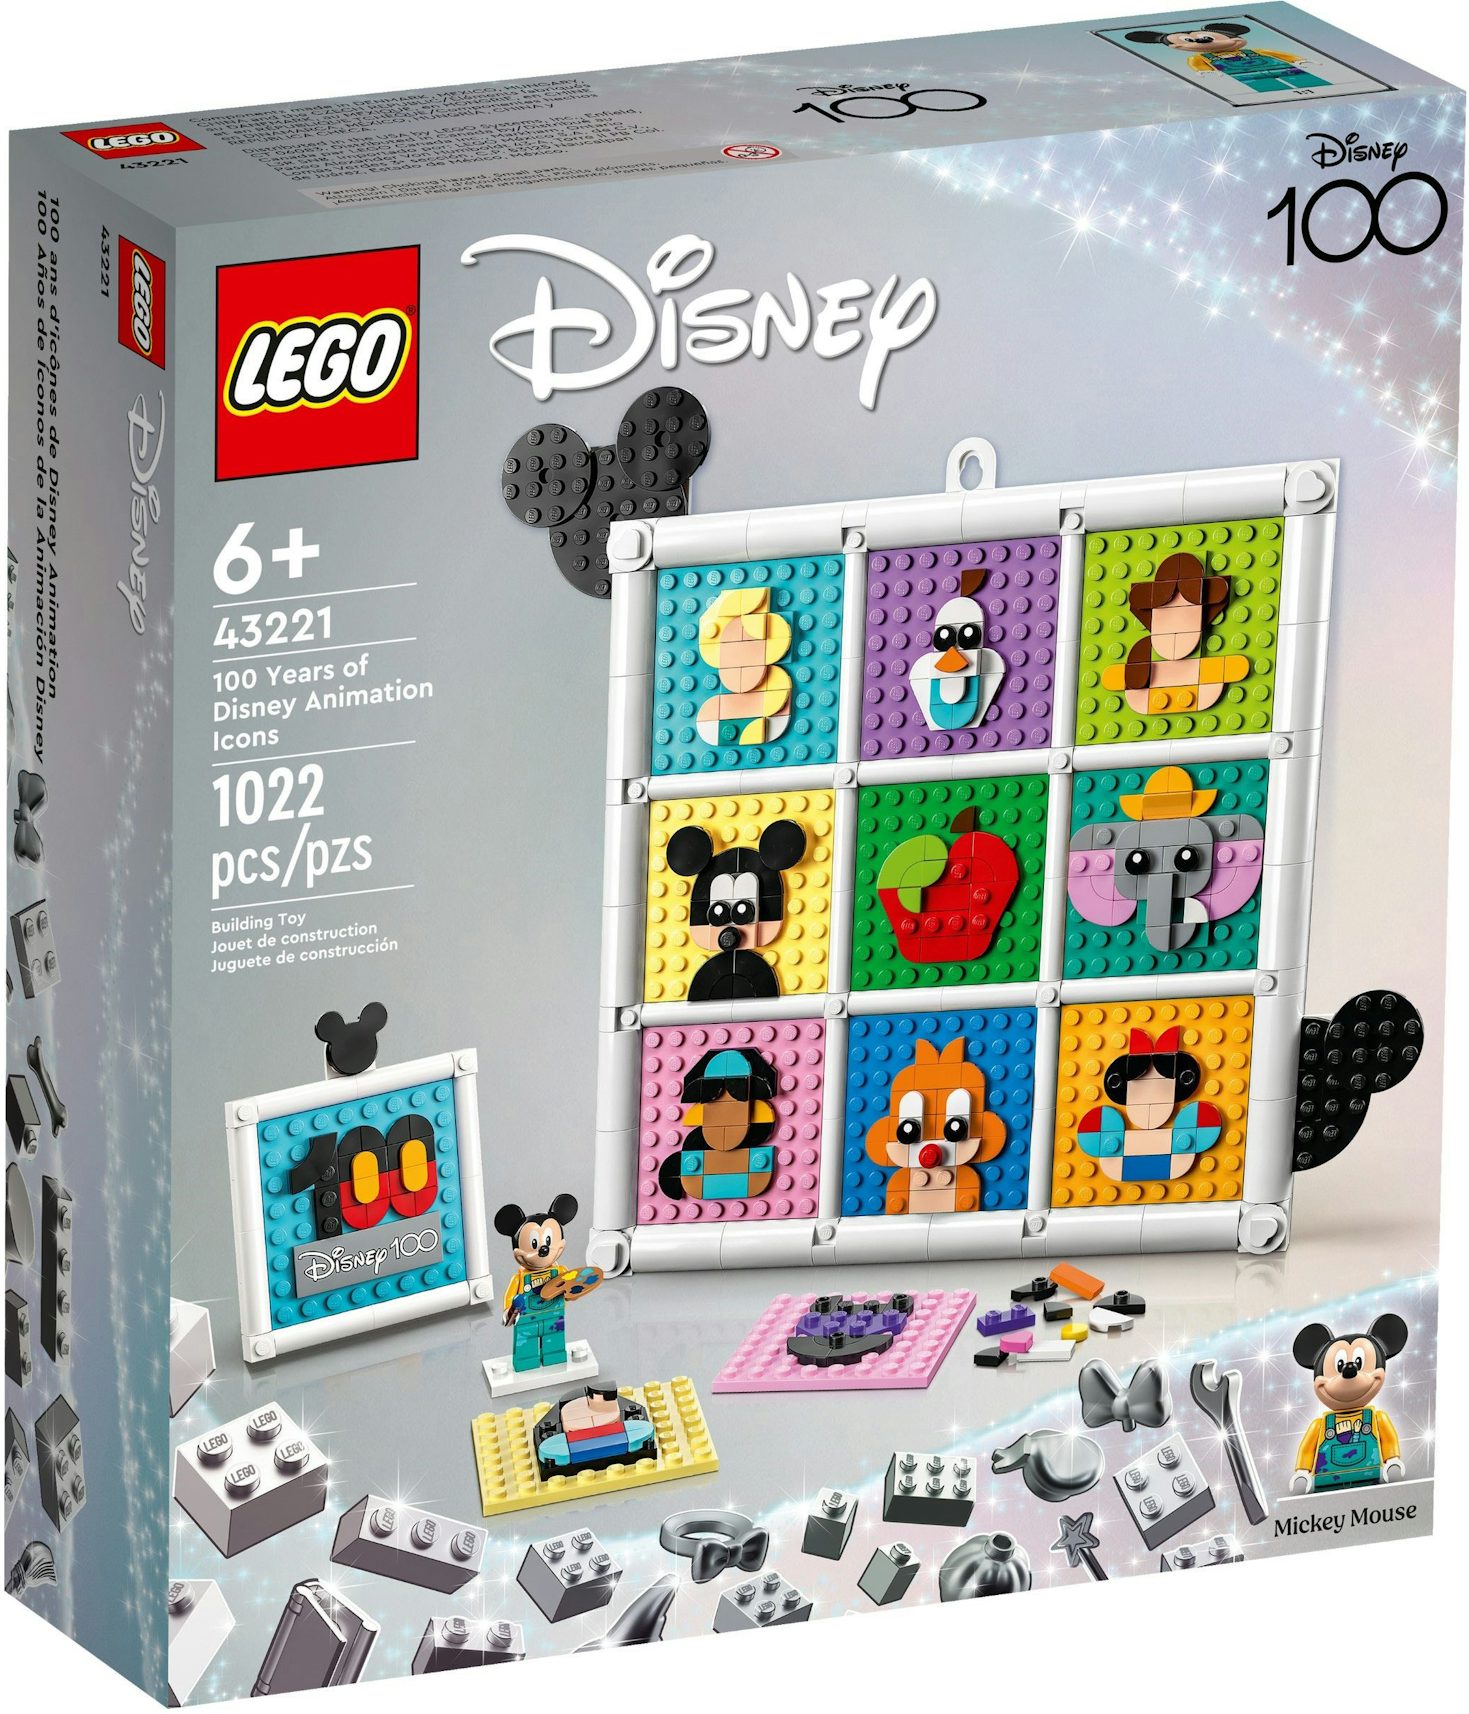 10328 - LEGO® Icons - Le Bouquet de Roses LEGO : King Jouet, Lego